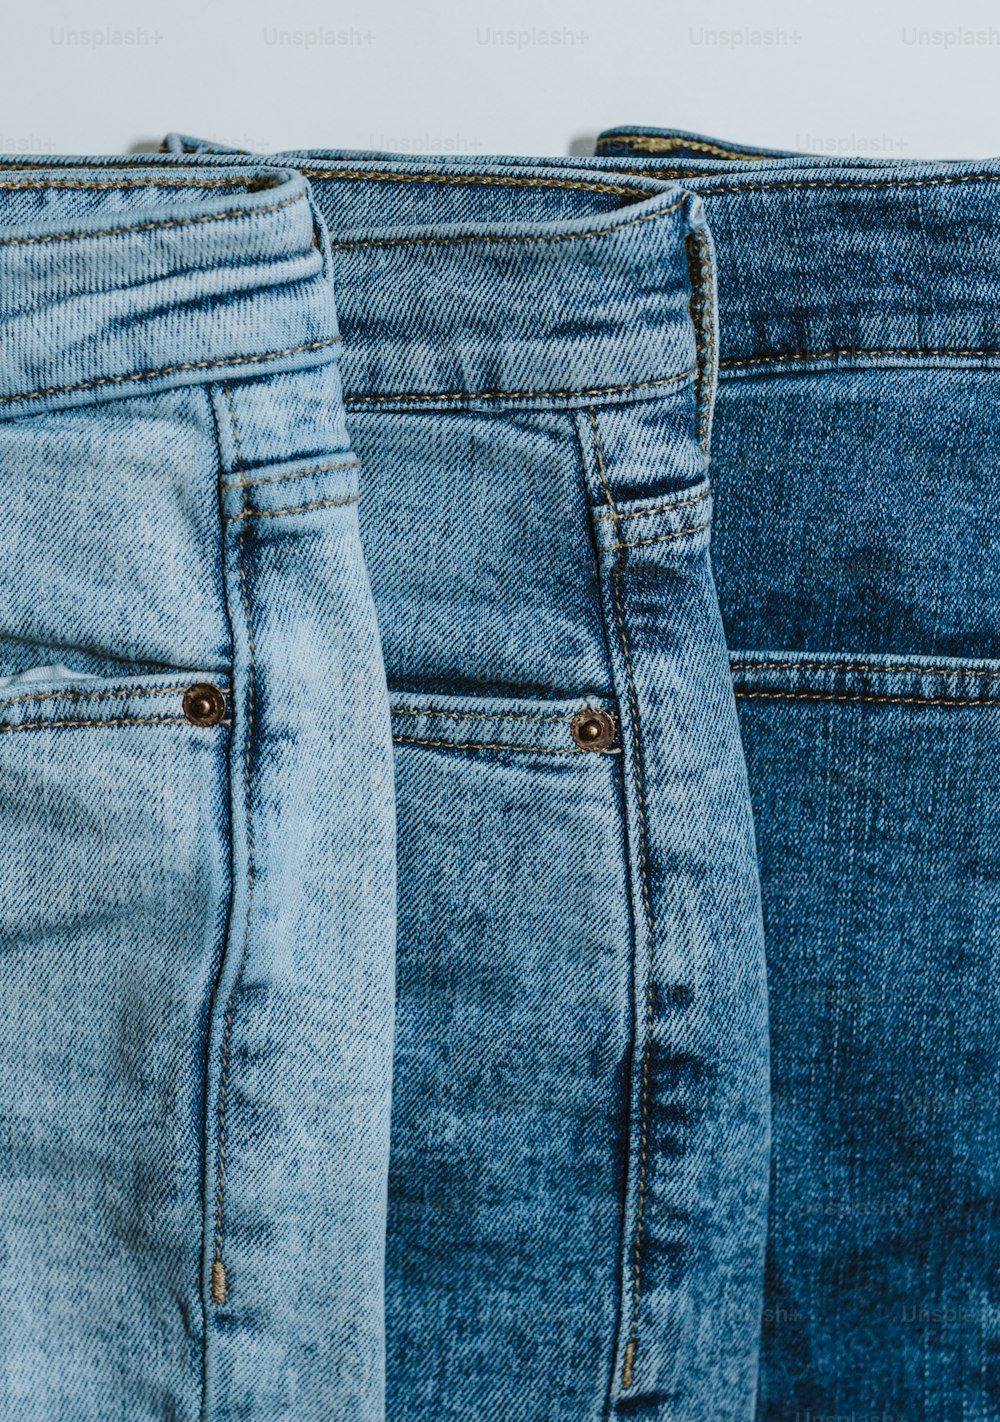 Trois paires de jeans sont alignées d’affilée